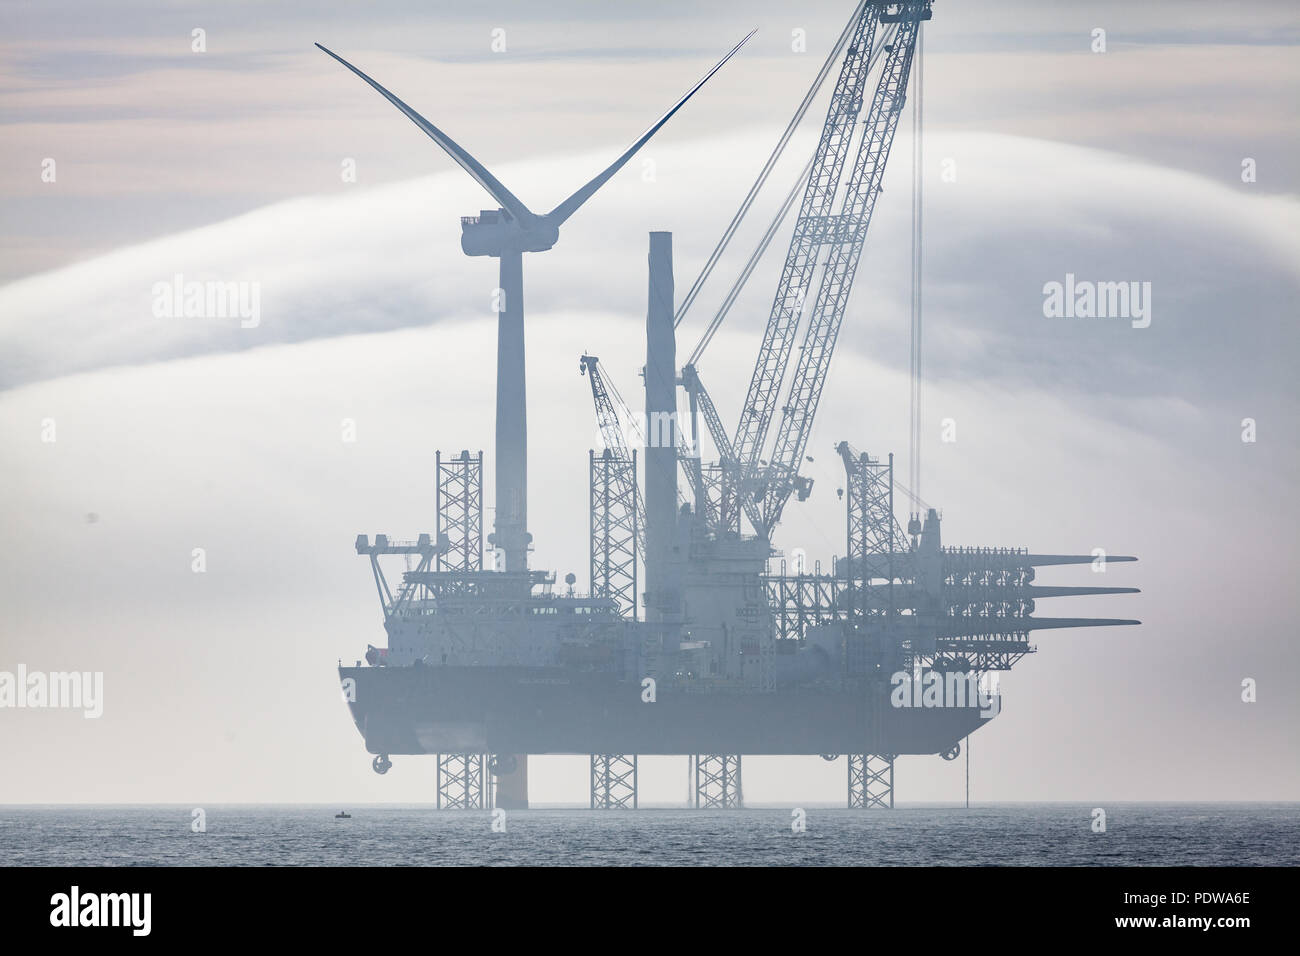 Seajacks travaillant sur le Scylla Extension Walney éoliennes en mer dans des conditions brumeuses. Couverture nuageuse inhabituelle de formations peuvent se voir dans la distance Banque D'Images